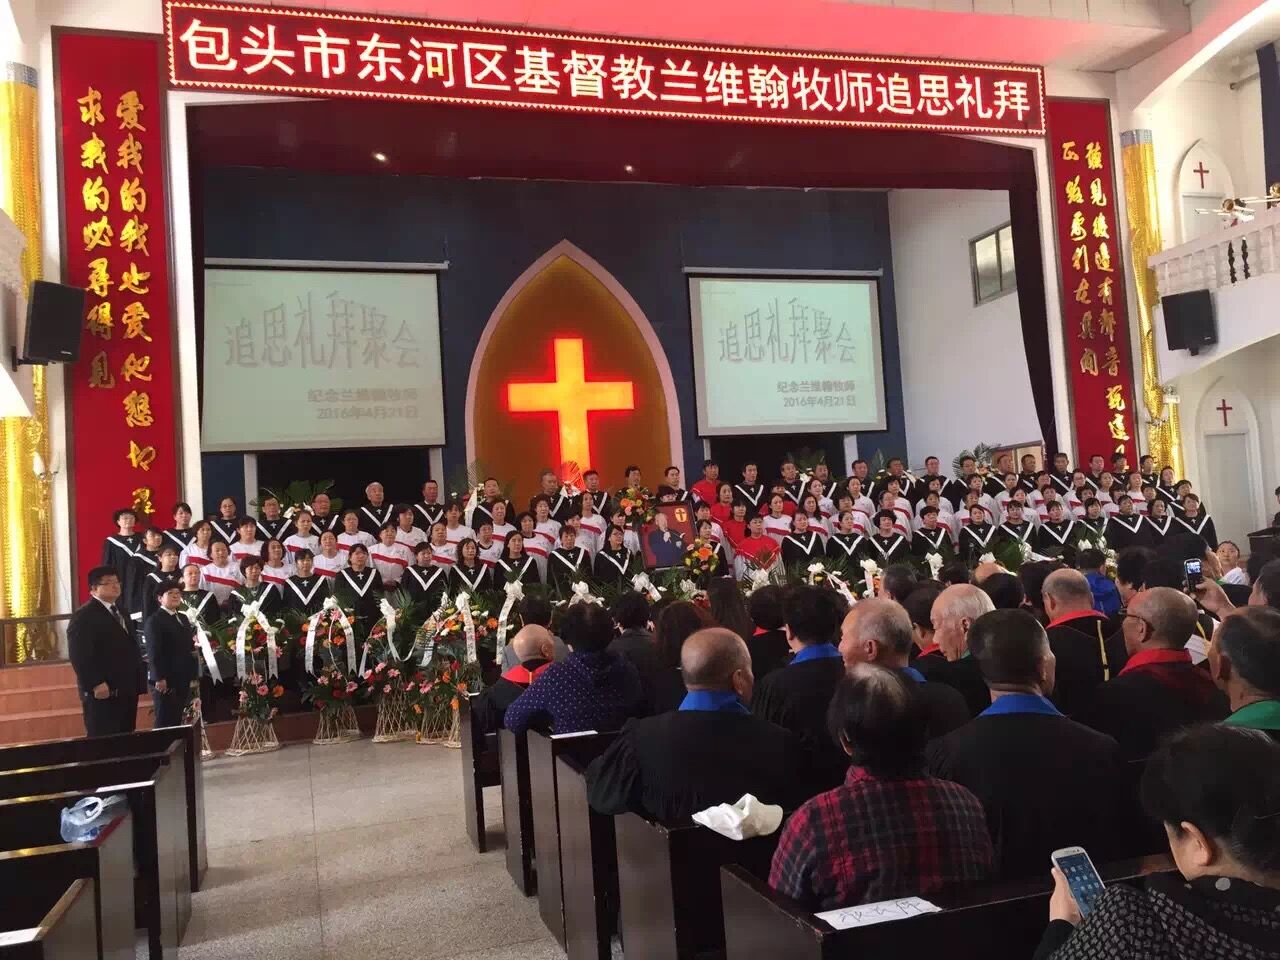 The memorial service for Rev. Lan, Baitou